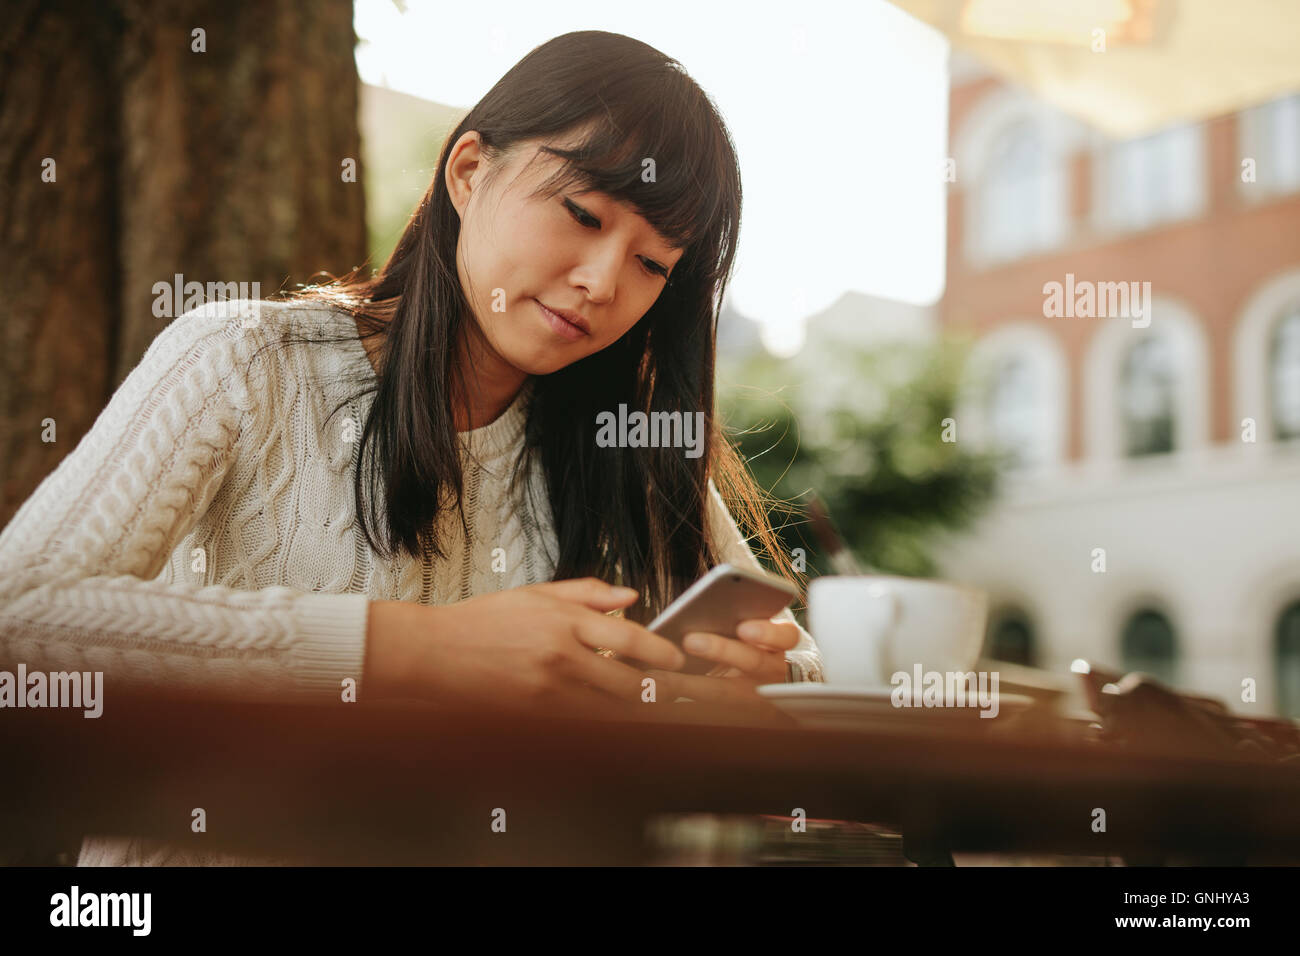 Chinesische Frau Textmitteilung auf smart Phone in einem Café zu schreiben. Bild junge Frau sitzt an einem Tisch mit einem Kaffee mit mobilen p Stockfoto